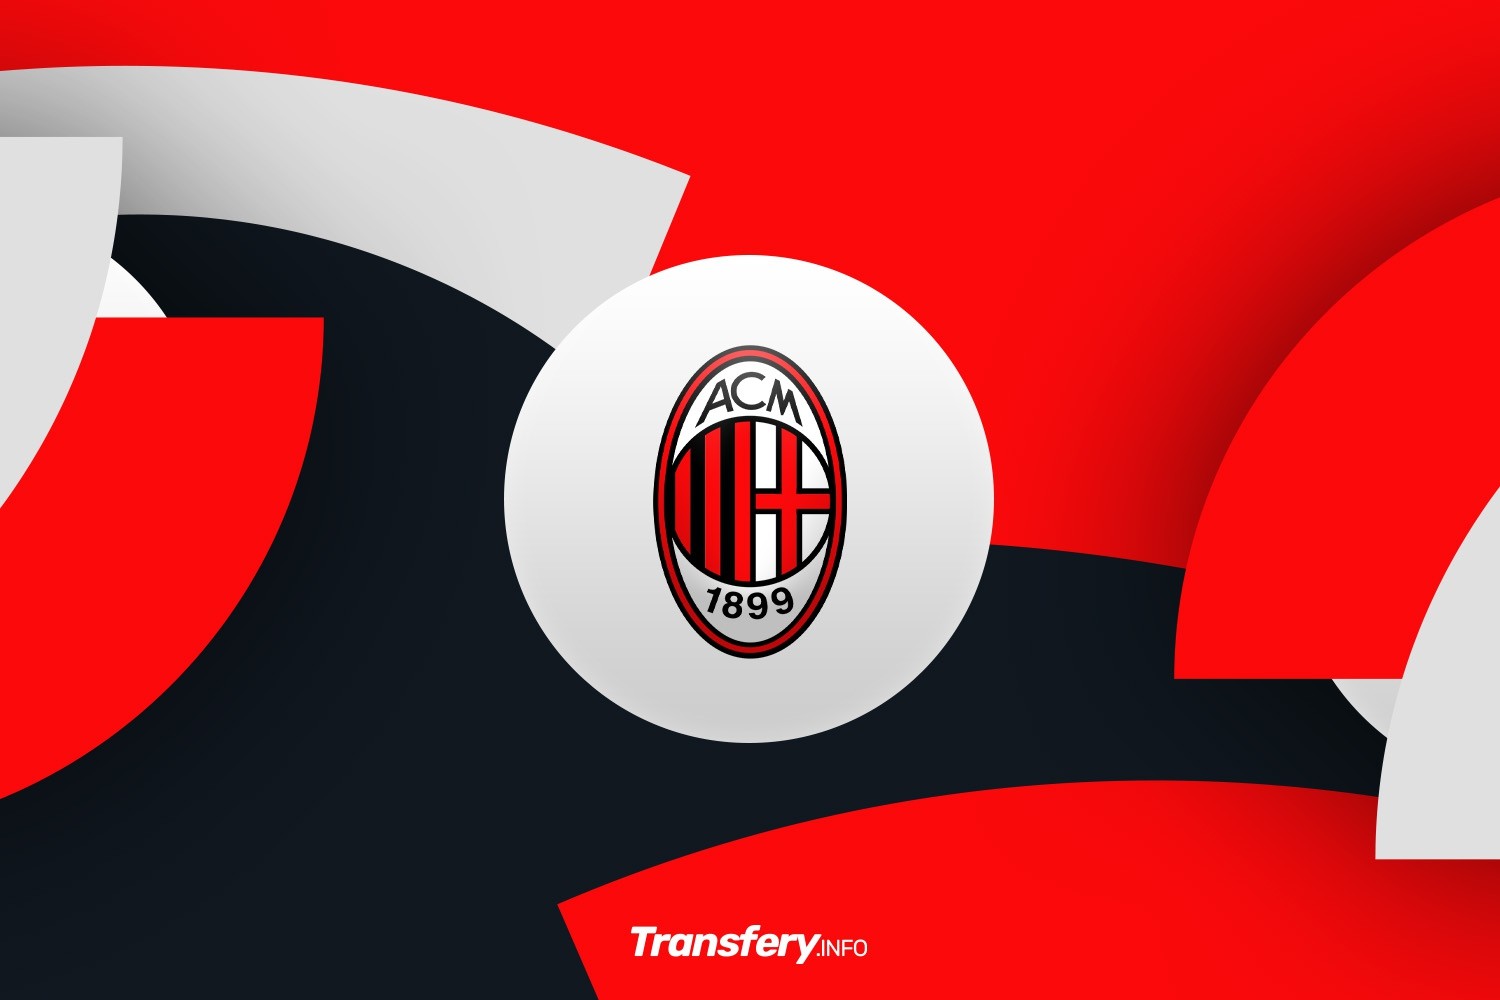 OFICJALNIE: AC Milan sięga po wychowanka Realu Madryt